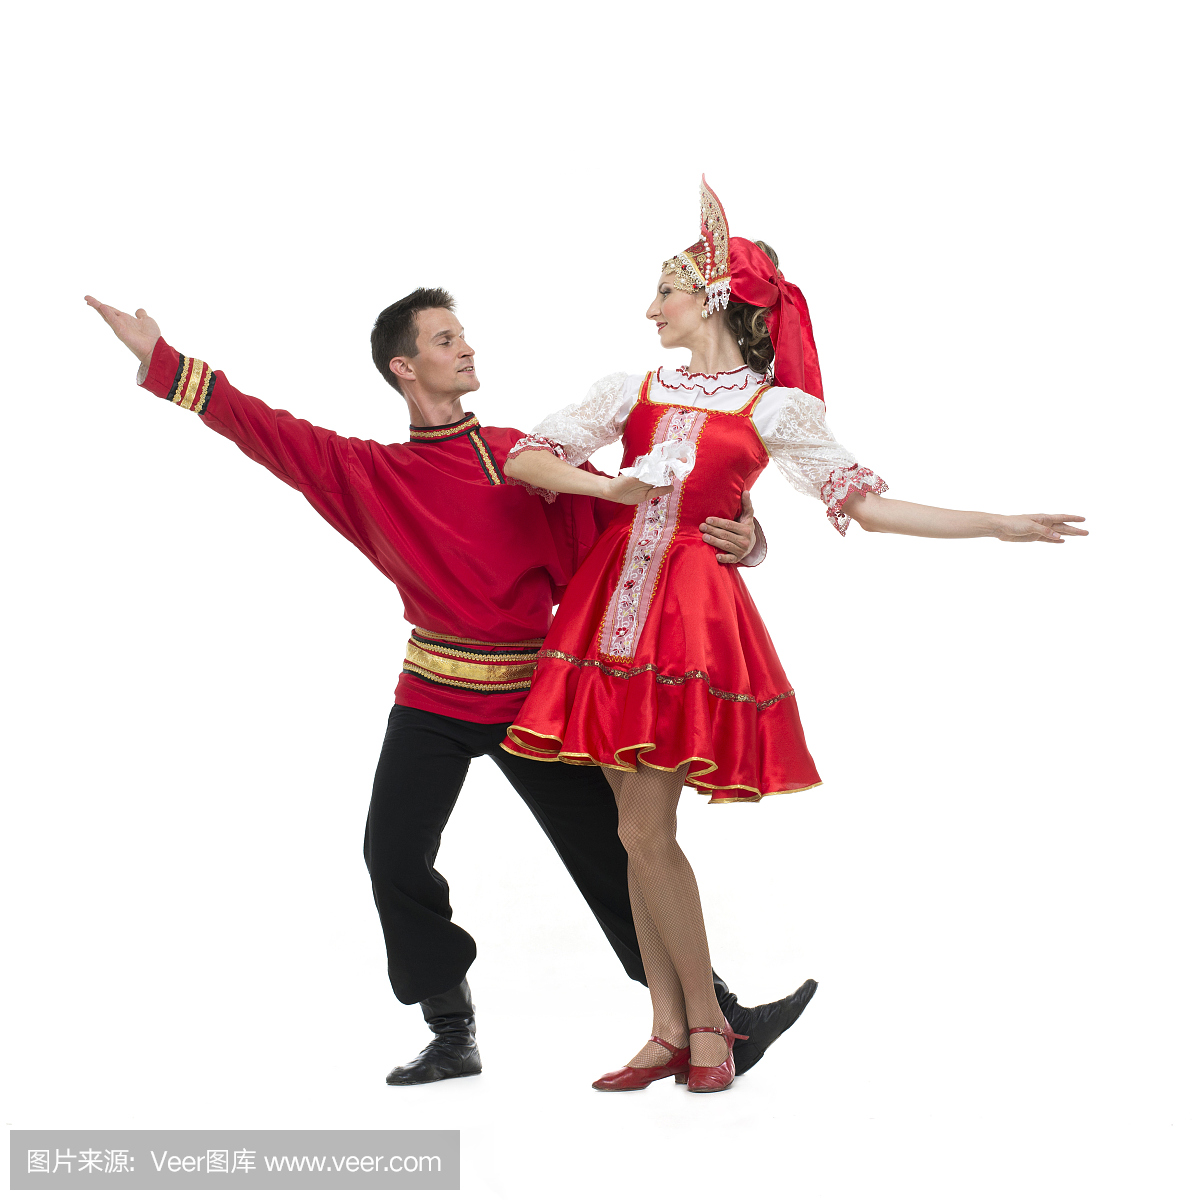 几个舞蹈家在俄罗斯传统的服装